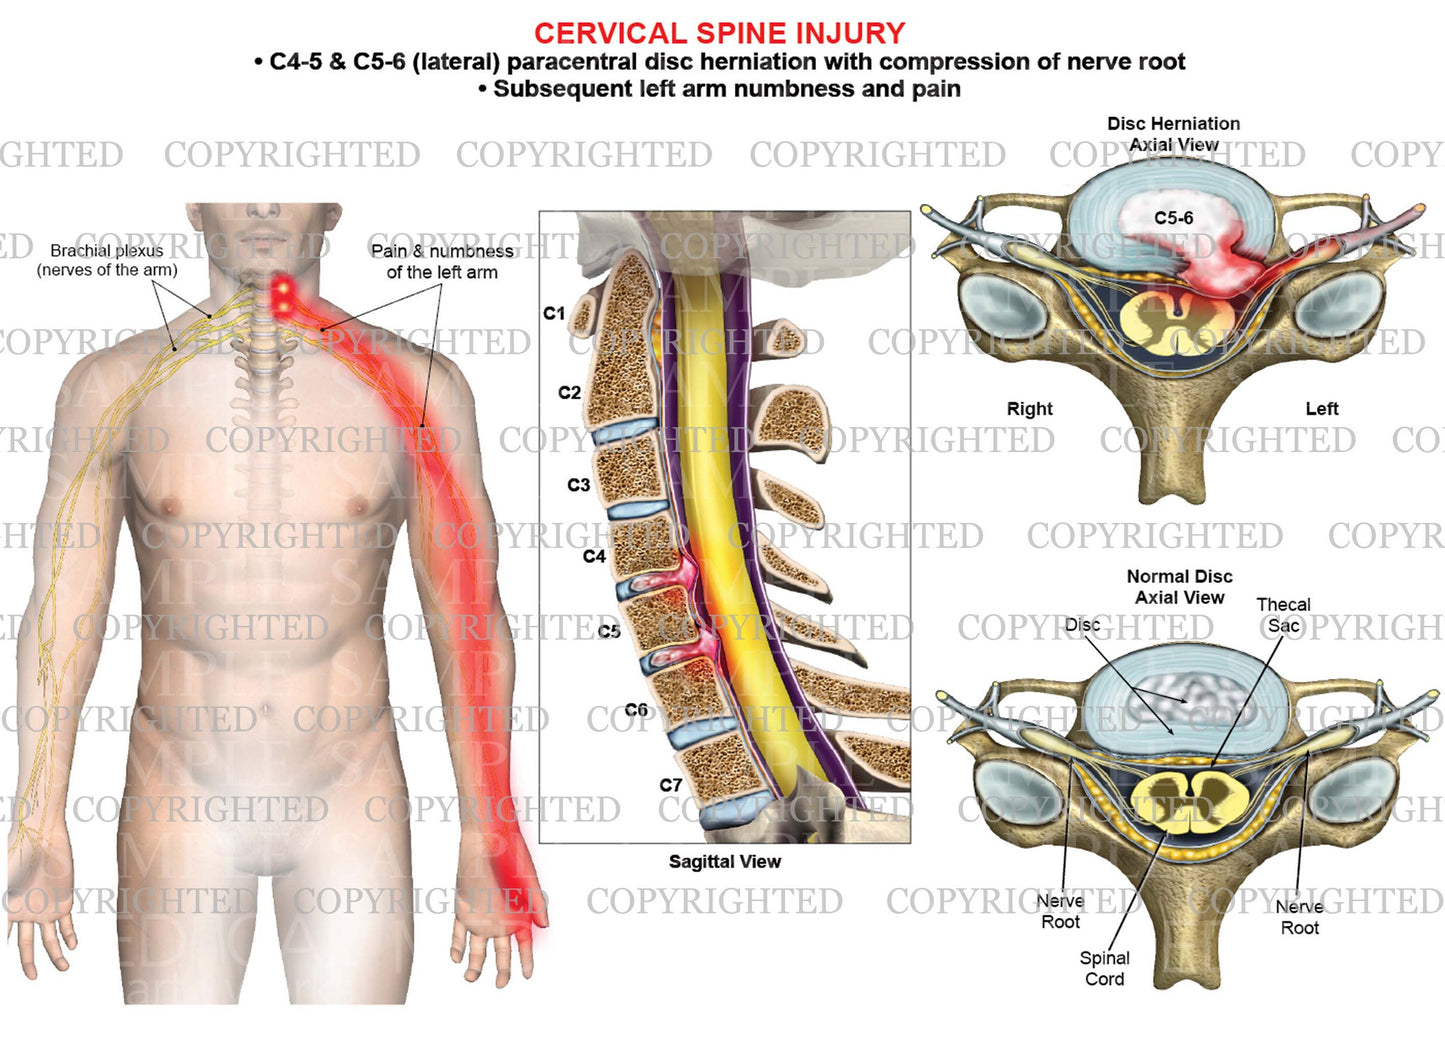 2 lavel - C4-5 and C5-6 disc herniation - paracentral - left arm nerve pain numbness